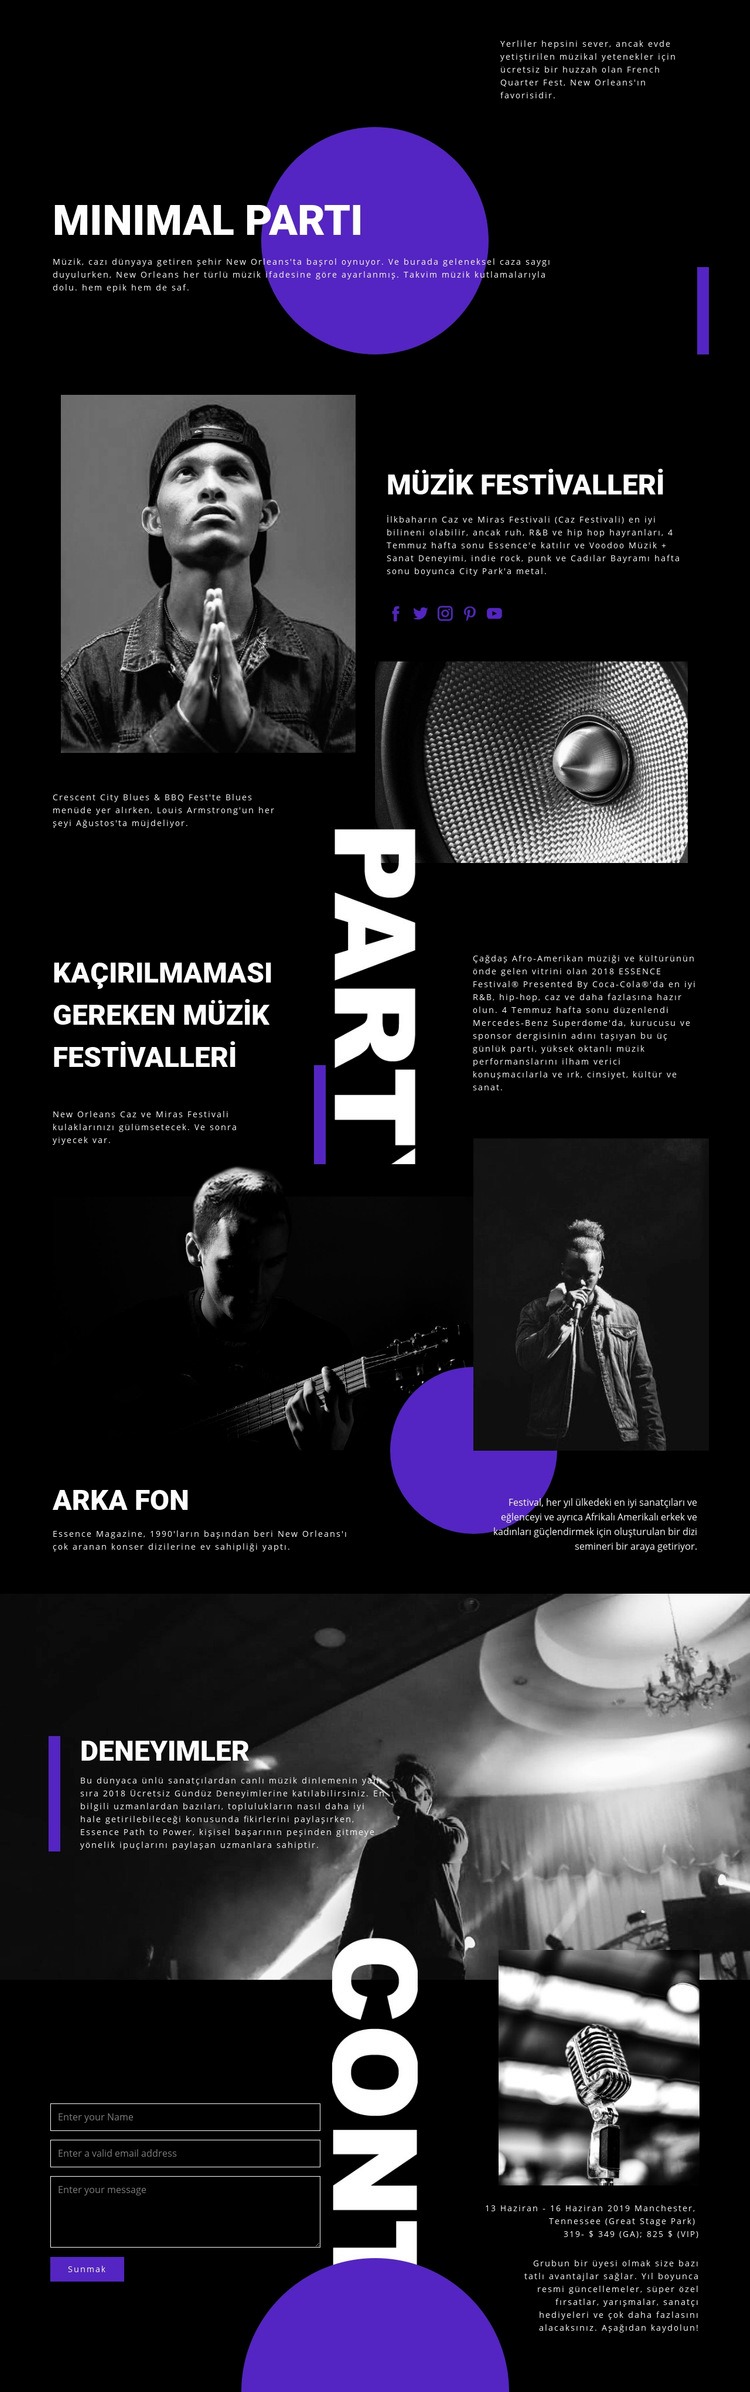 Müzik Festivali Web sitesi tasarımı